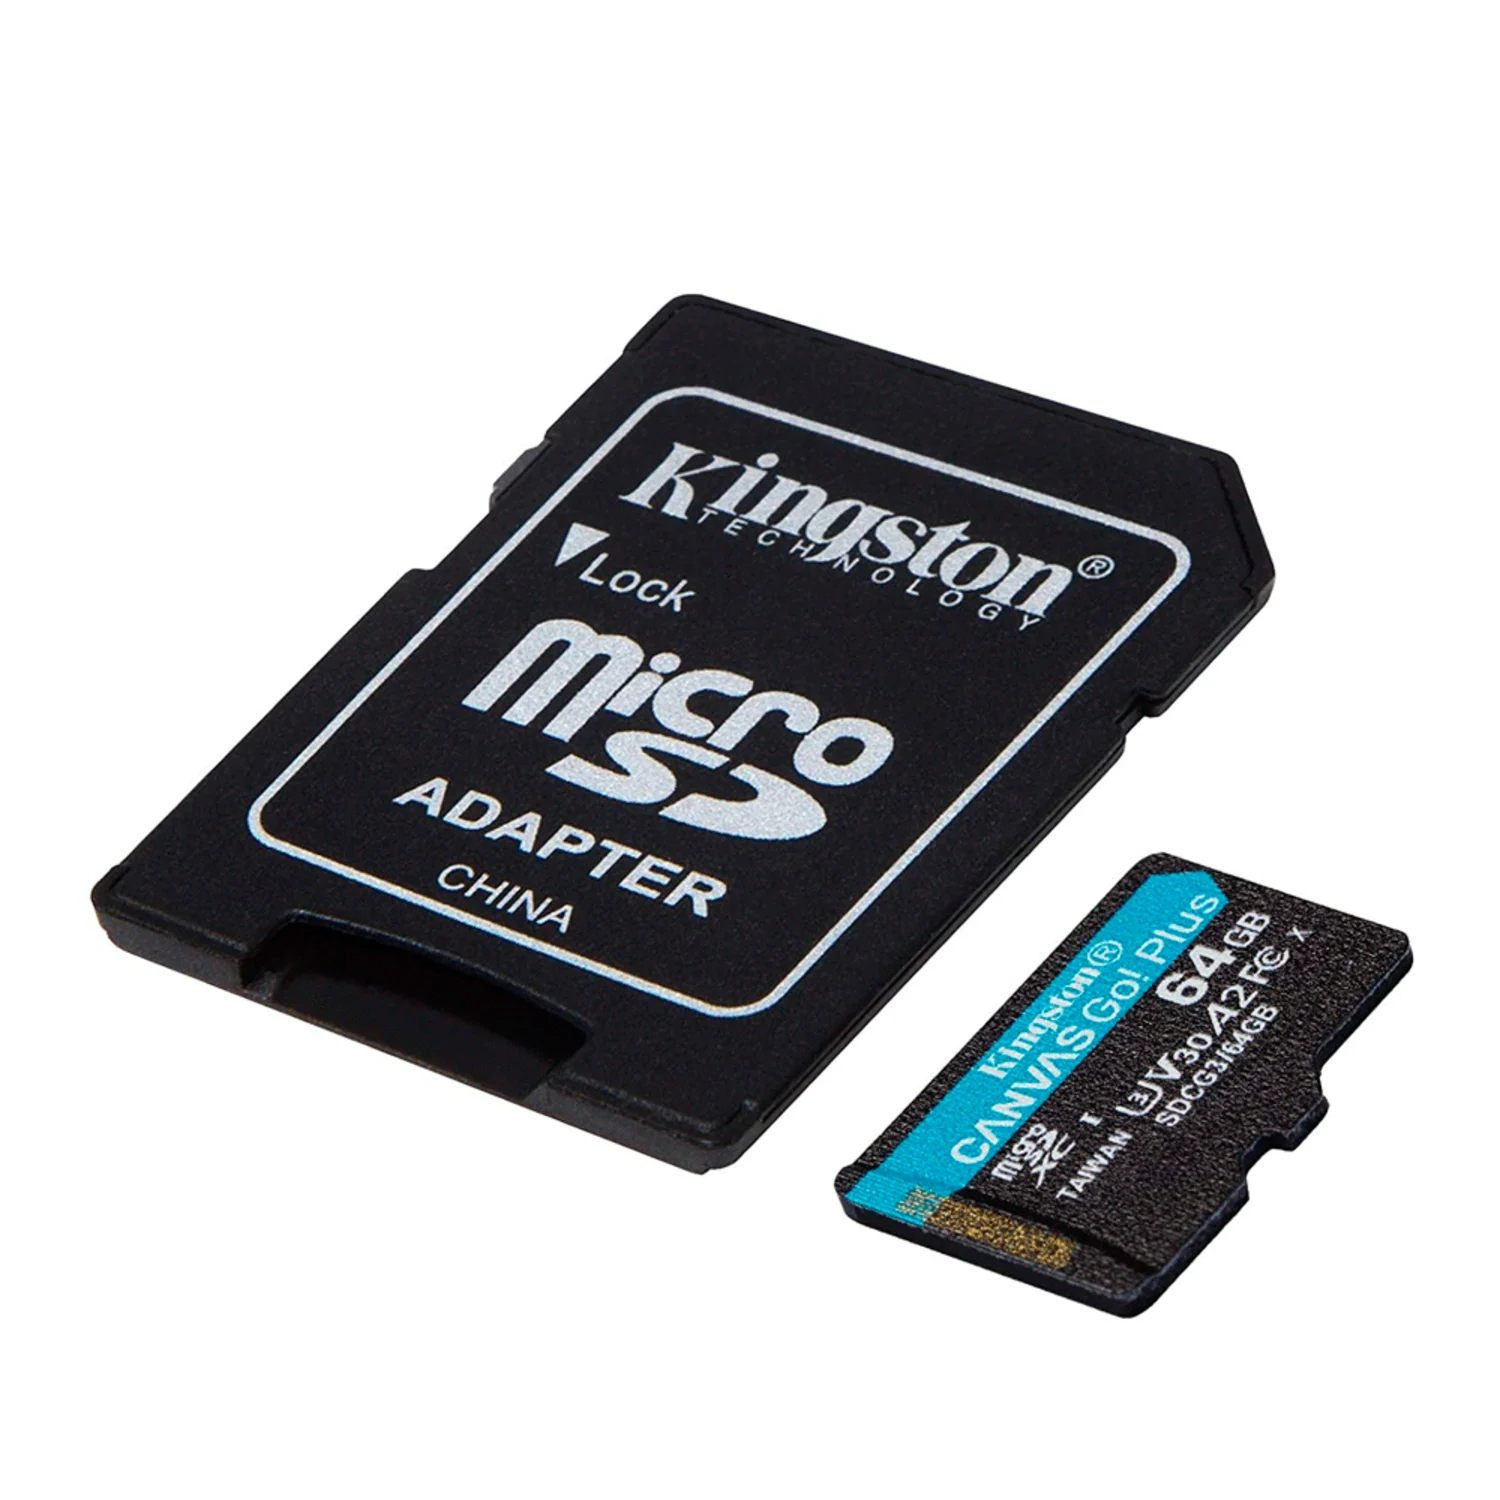 Cartão de Memória Micro SD Kingston Canvas Go Plus 64GB / U3 / 170MBS - (SDCG3/64GB)